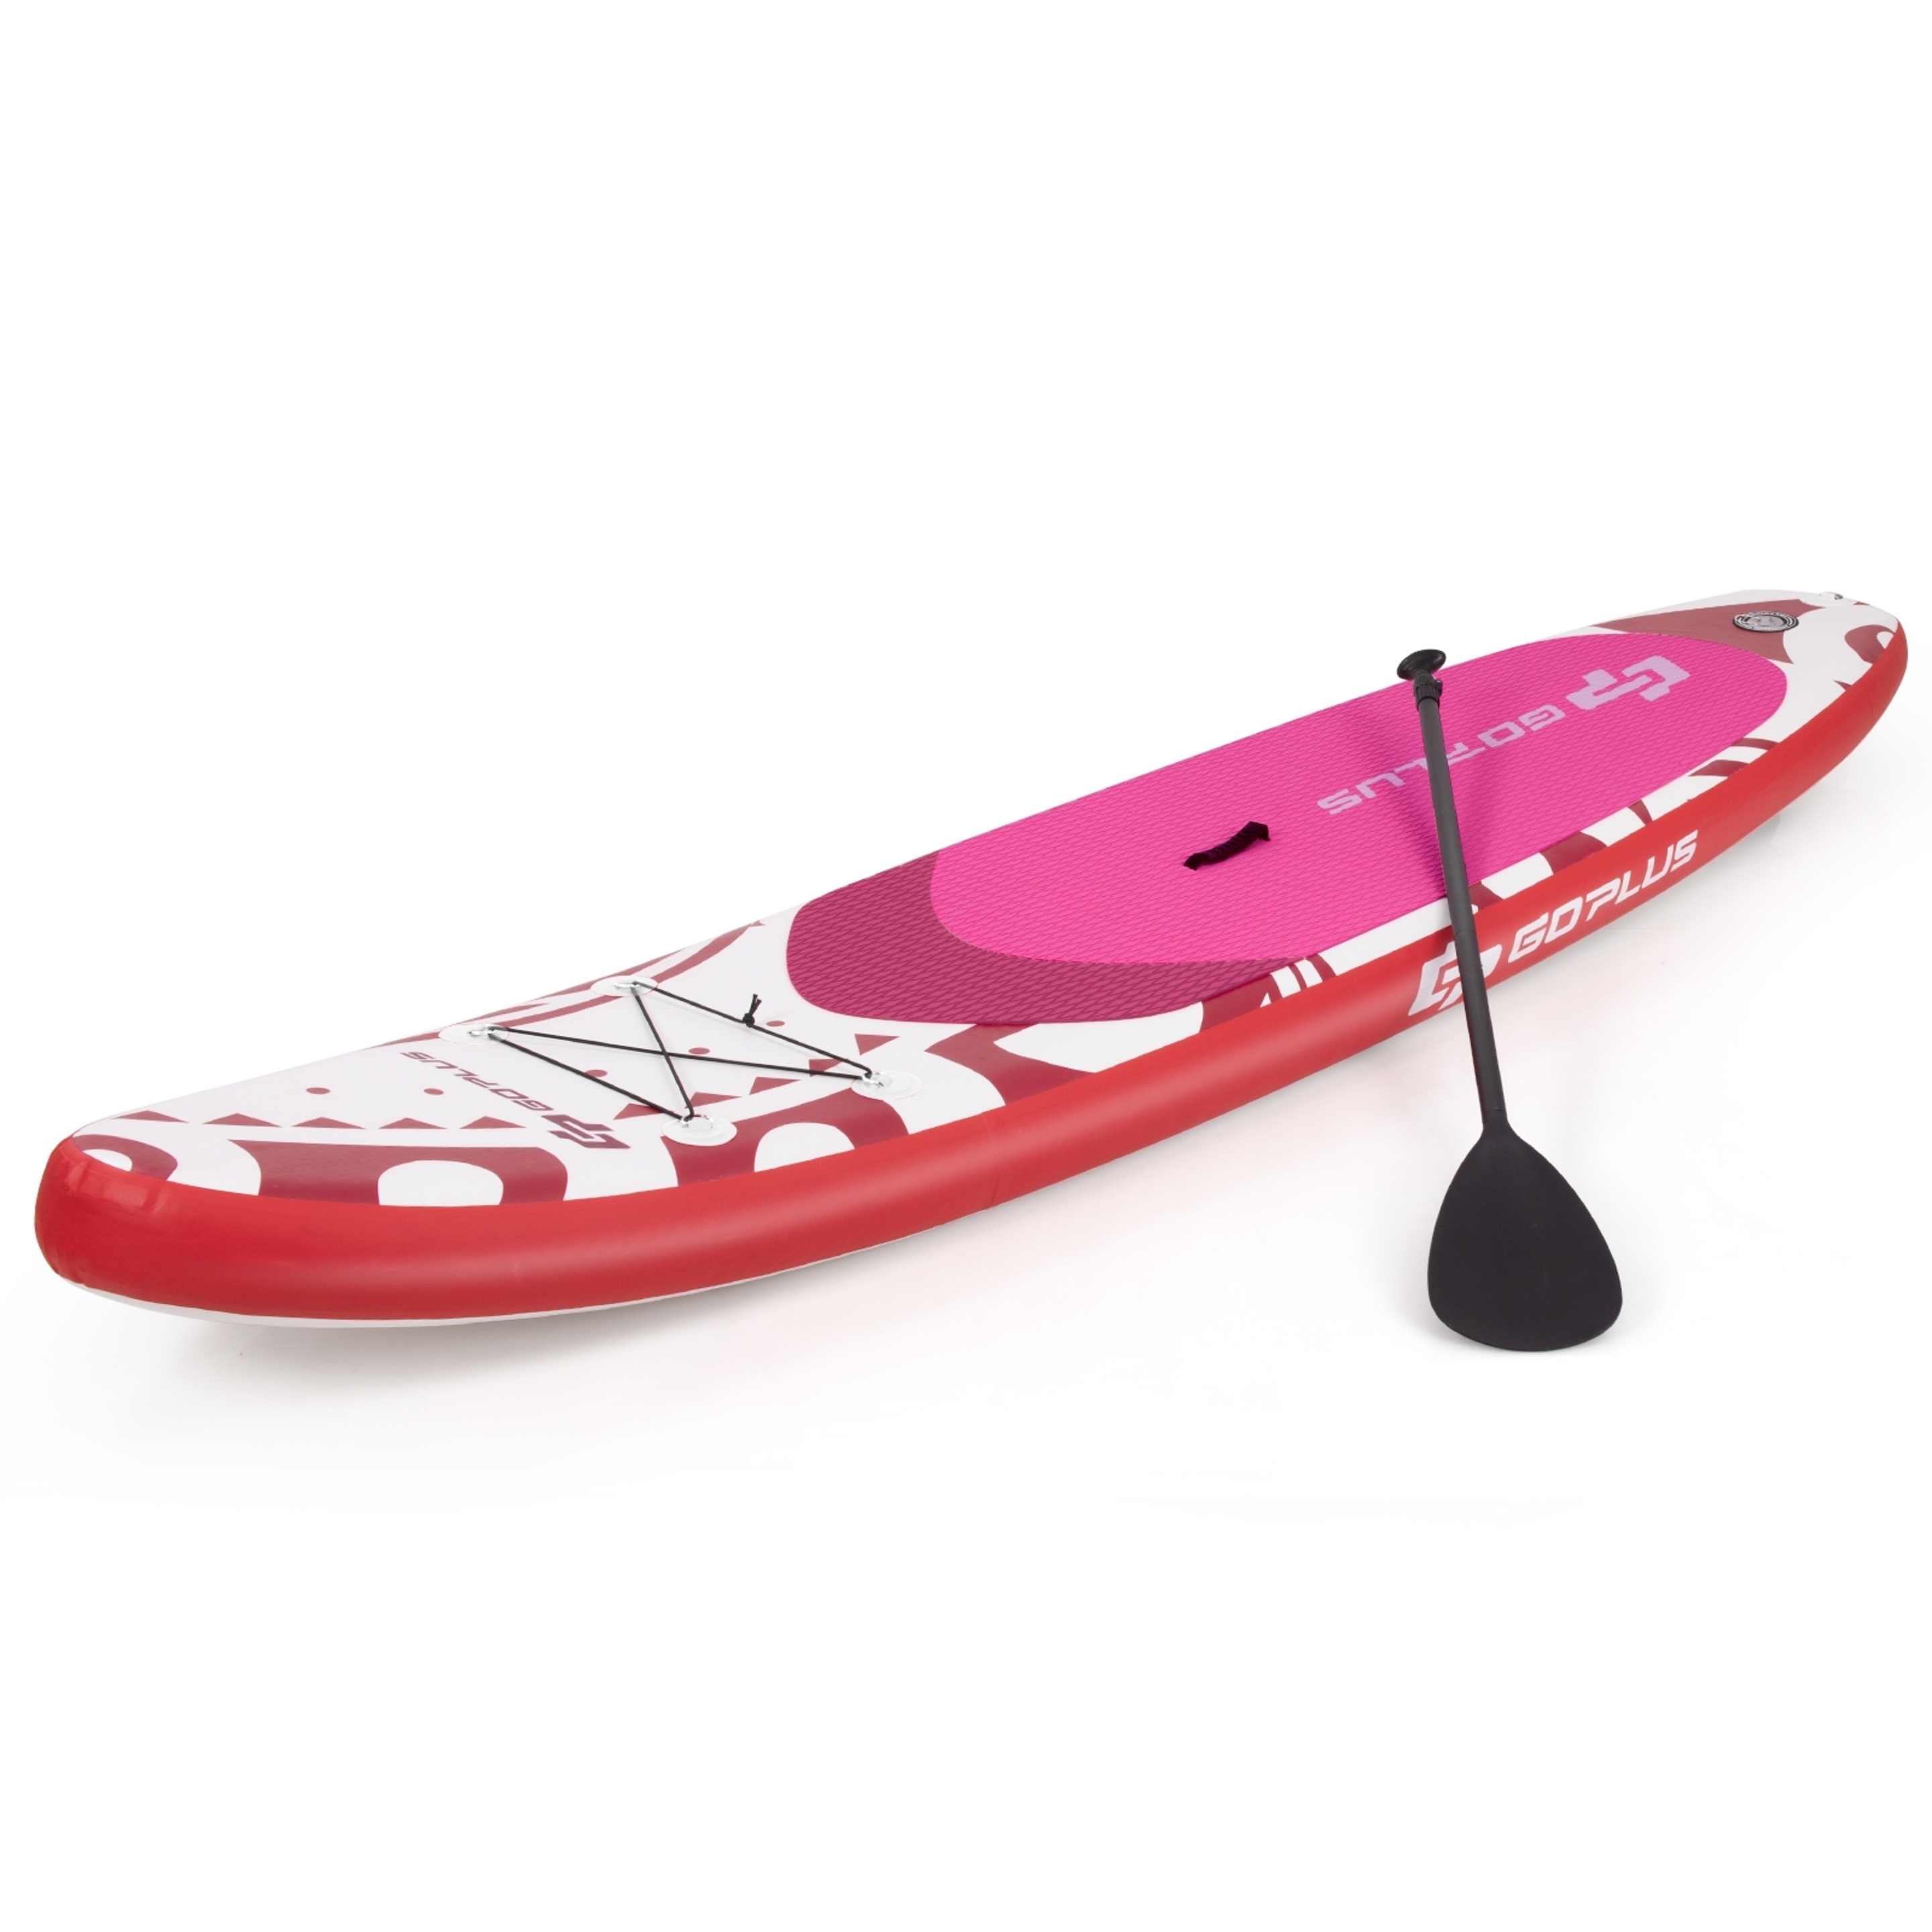 Costway Tabla Inflable De Paddle  Tabla Sup Tabla De Surf Kit Con Remo Bomba Correa - Rojo - Tabla De Surf  MKP